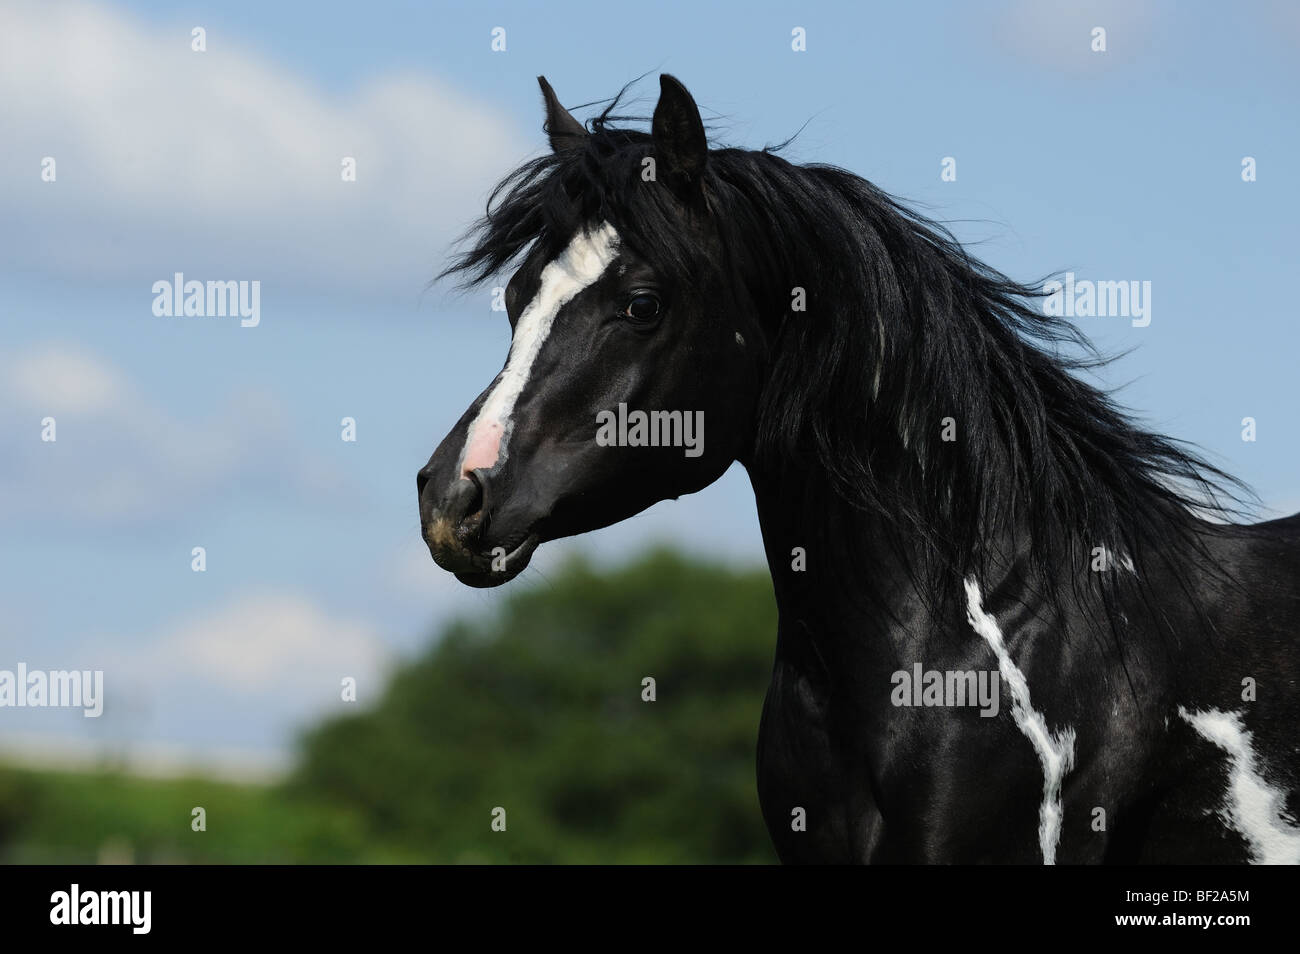 Arab Horse (Equus ferus caballus), portrait of a pinto. Stock Photo